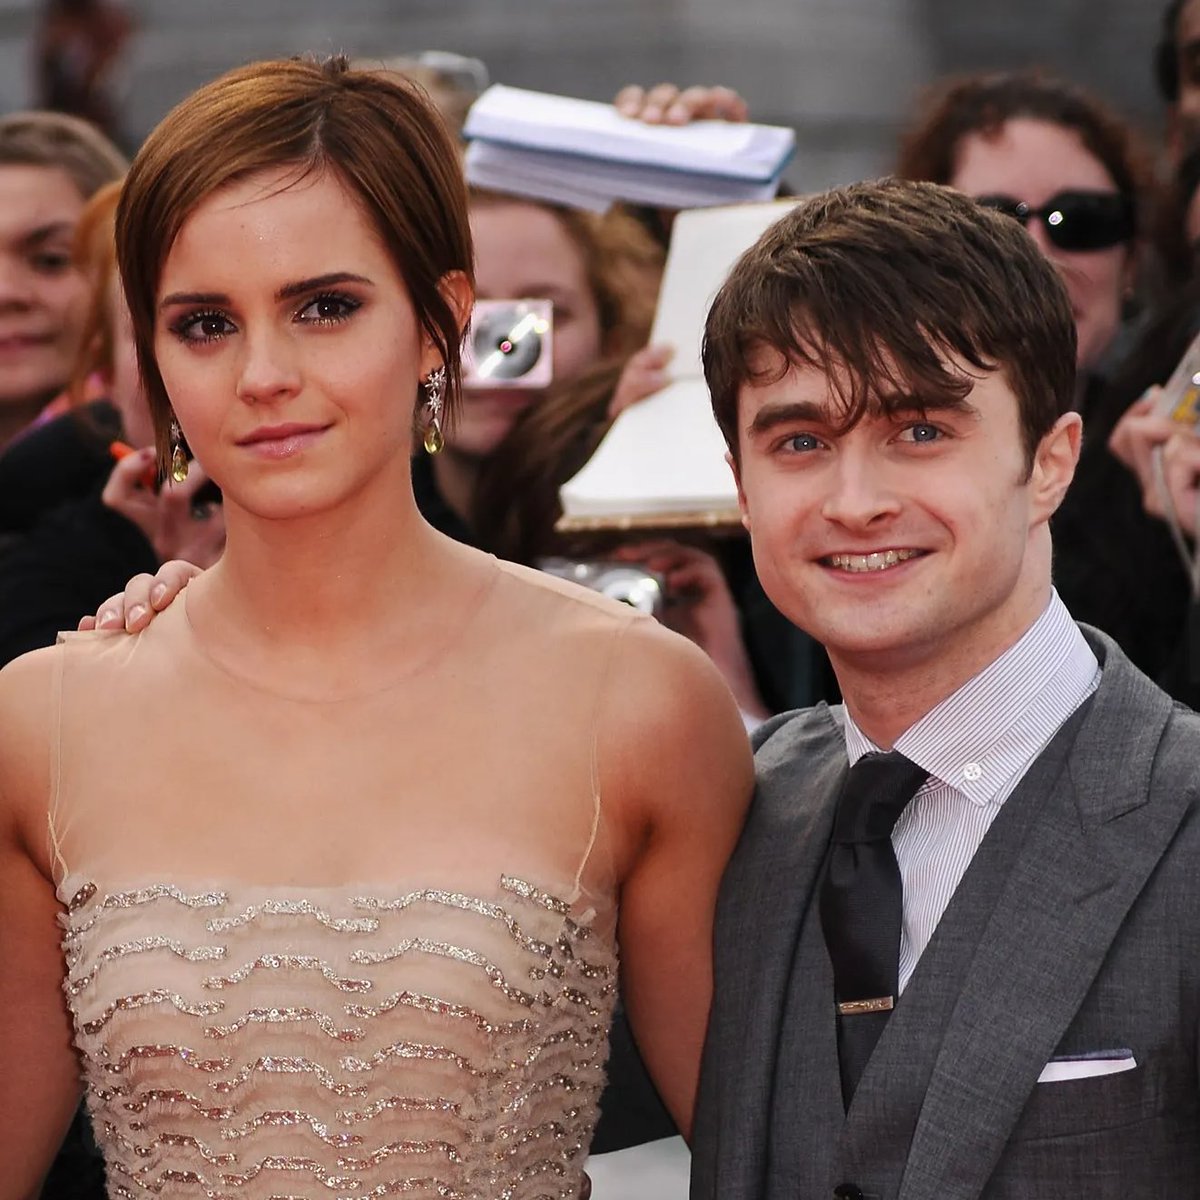 J.K. Rowling ha dicho que no perdonará a Emma Watson y Daniel Radcliffe por sus múltiples declaraciones en defensa de las personas trans. “Pueden guardarse sus disculpas para mujeres vulnerables que dependen de espacios diferenciados por sexos.”